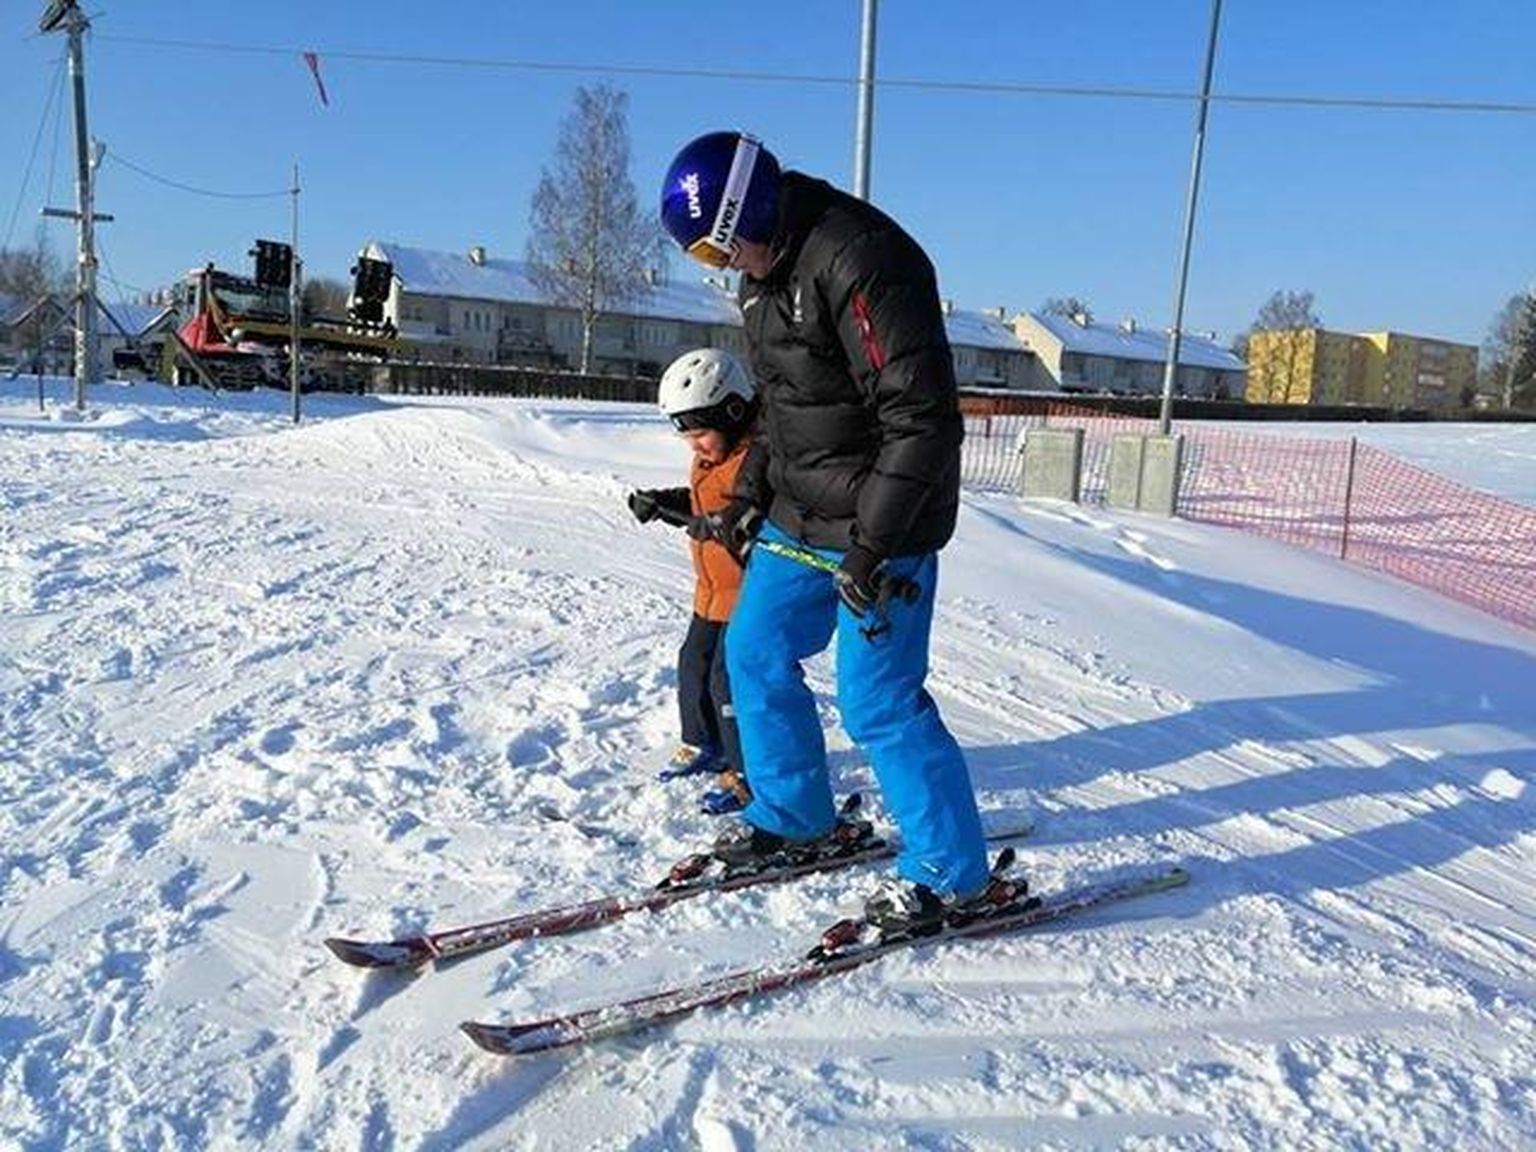 Väiksed põnnid õpivad Viljandi lumepargis slaalomit kogenud treeneri Hillar Heina juhendamisel.